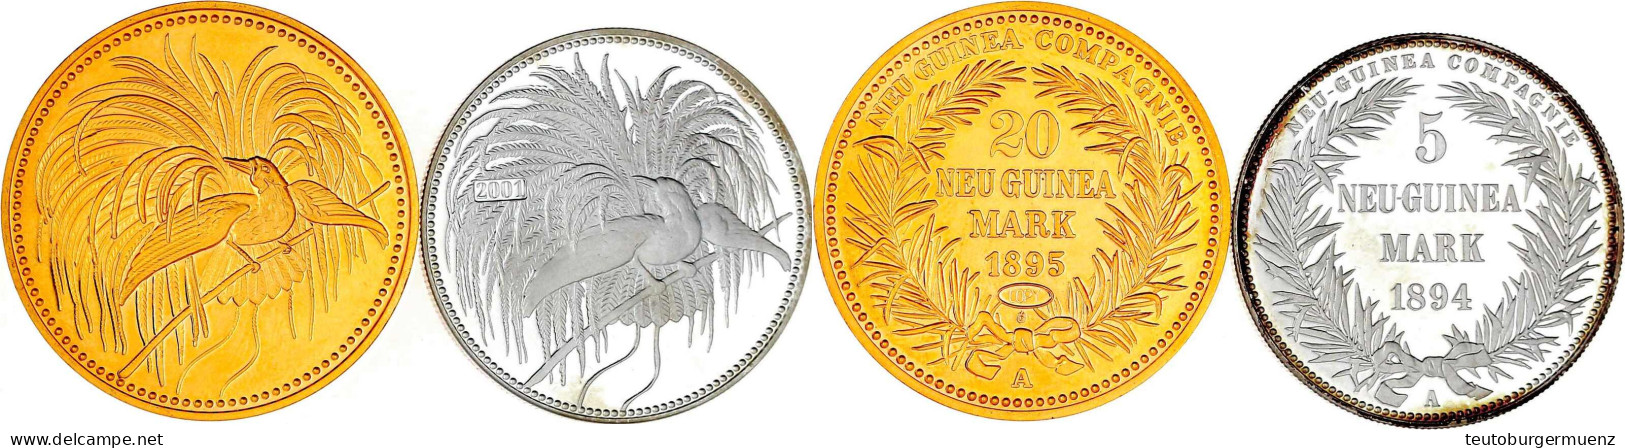 2 Neuprägungen: 5 Mark 1895/2001 Feinsilber In Originalgröße Und 20 Mark 1895 (Copy) In 5 Mark-Größe (CuNi Vergoldet). B - Nouvelle Guinée Allemande